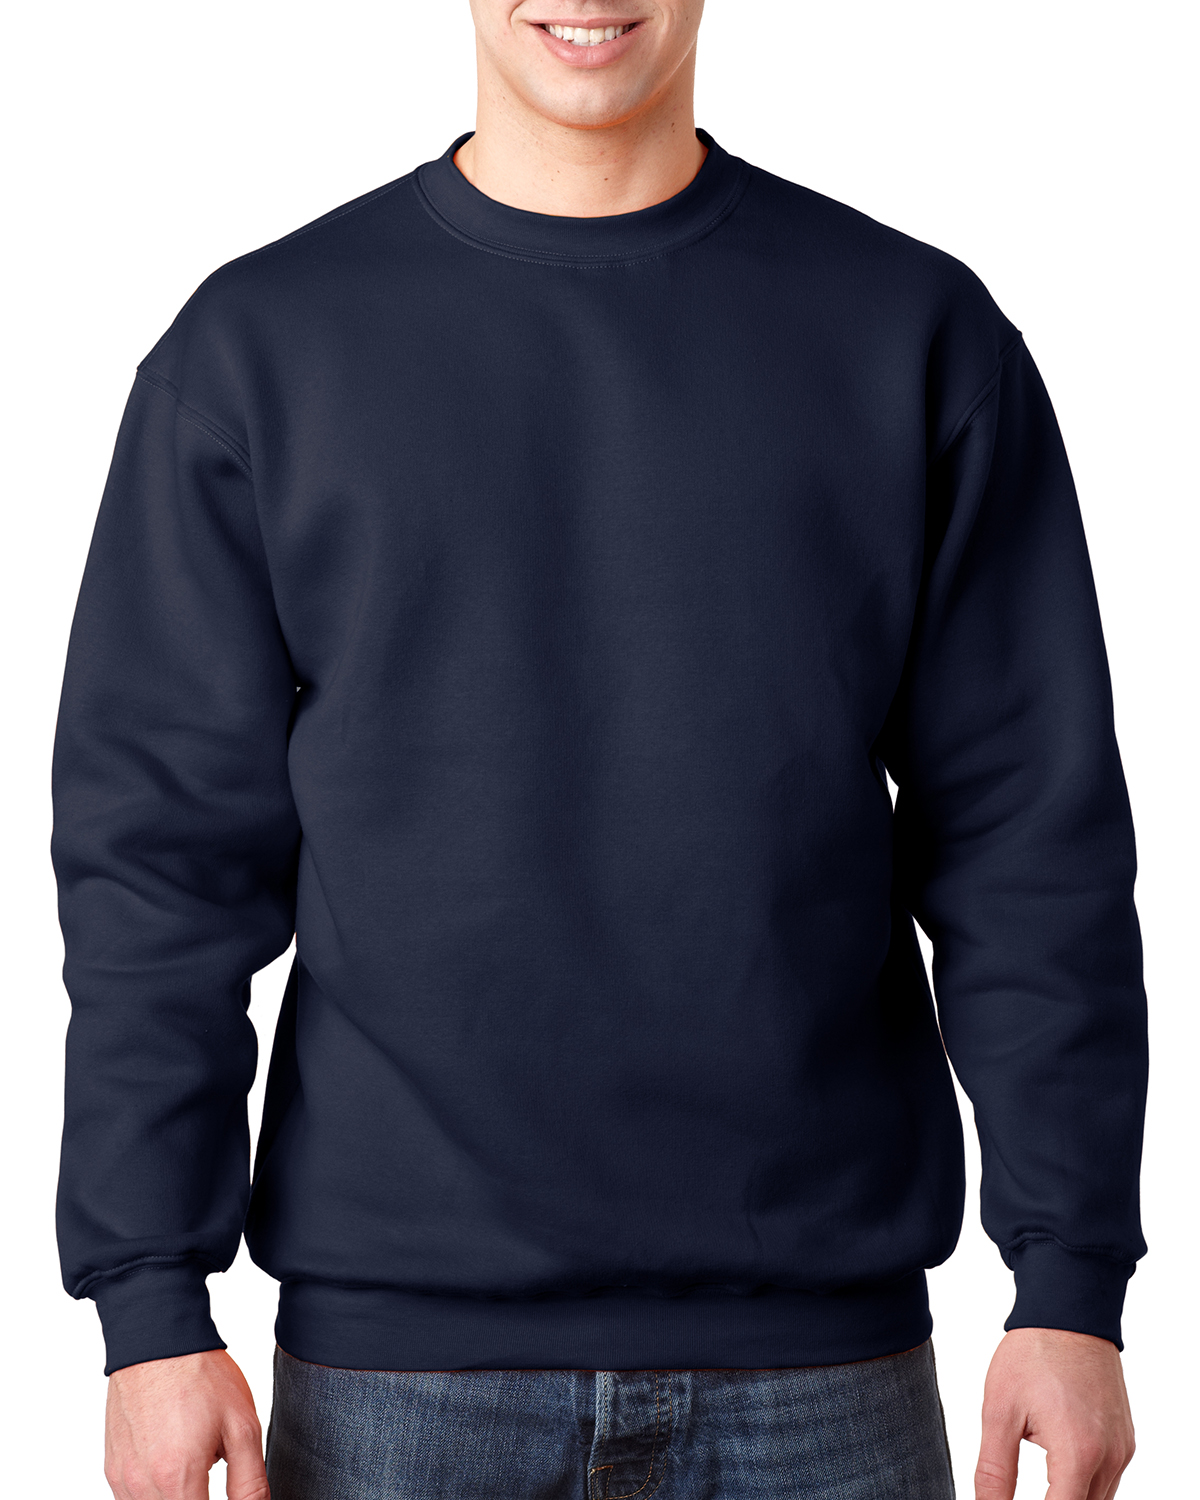 Bayside BA1102 - Adult Crewneck Sweatshirt $18.47 - Sweatshirts